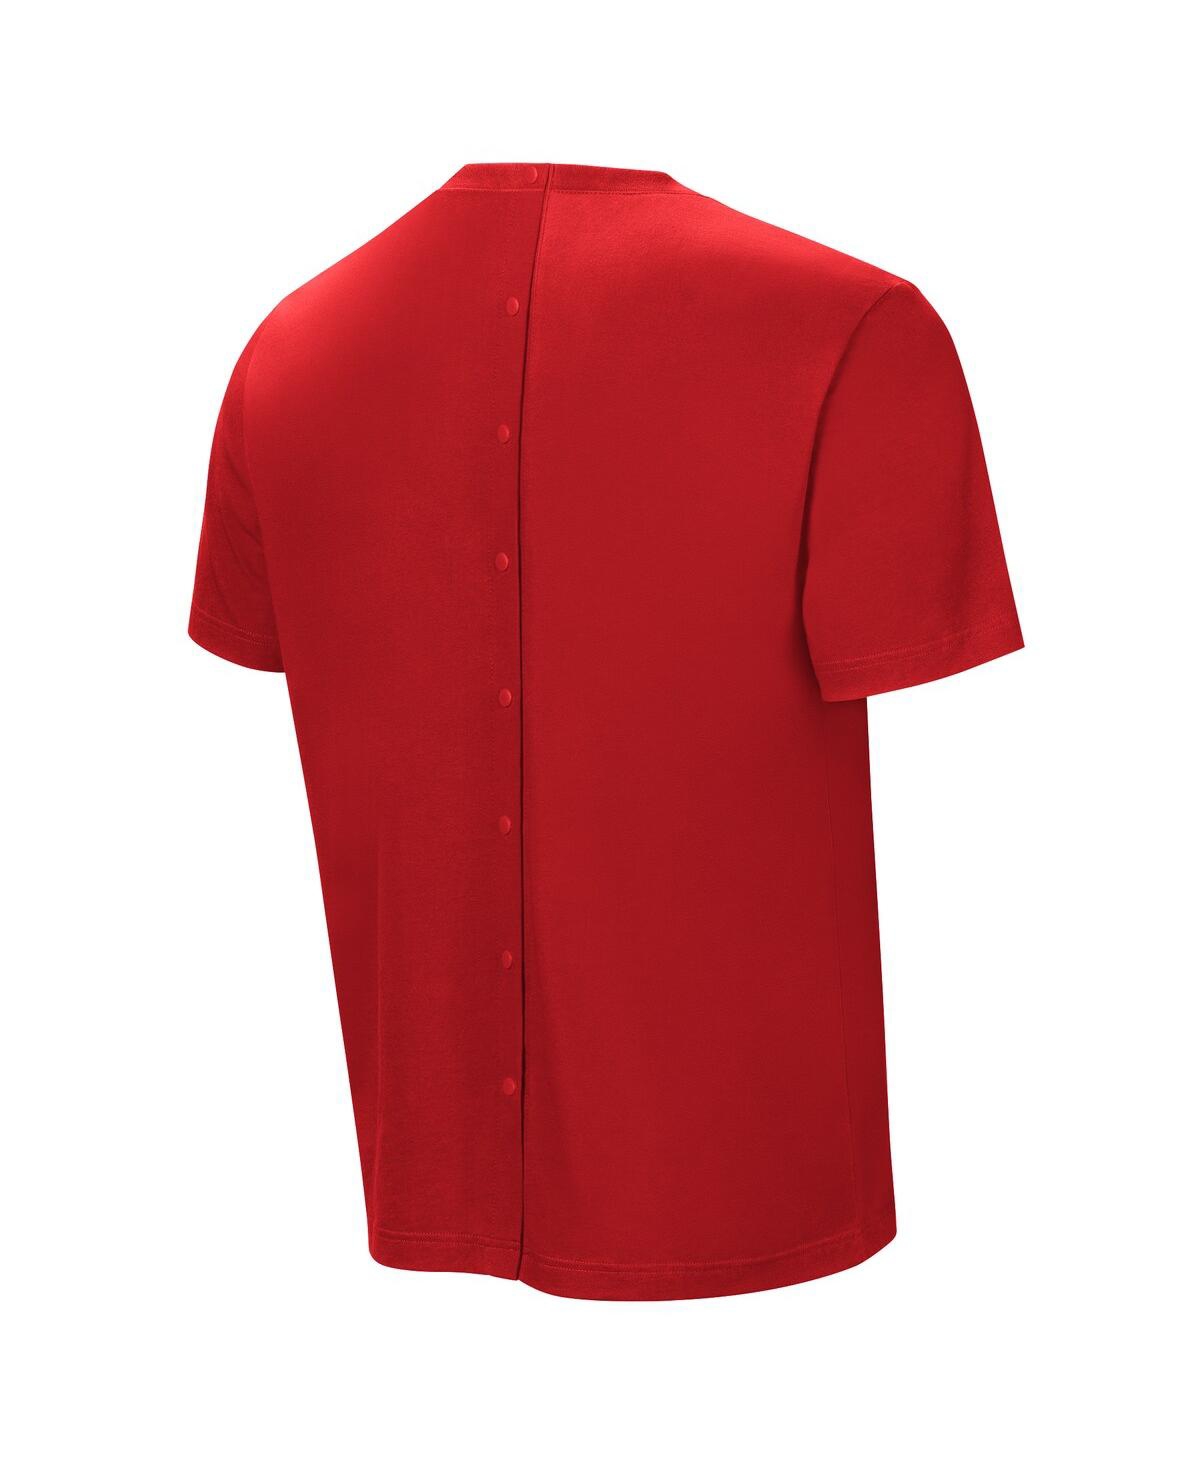 Shop Nfl Properties Men's Red Kansas City Chiefs Field Goal Assisted T-shirt